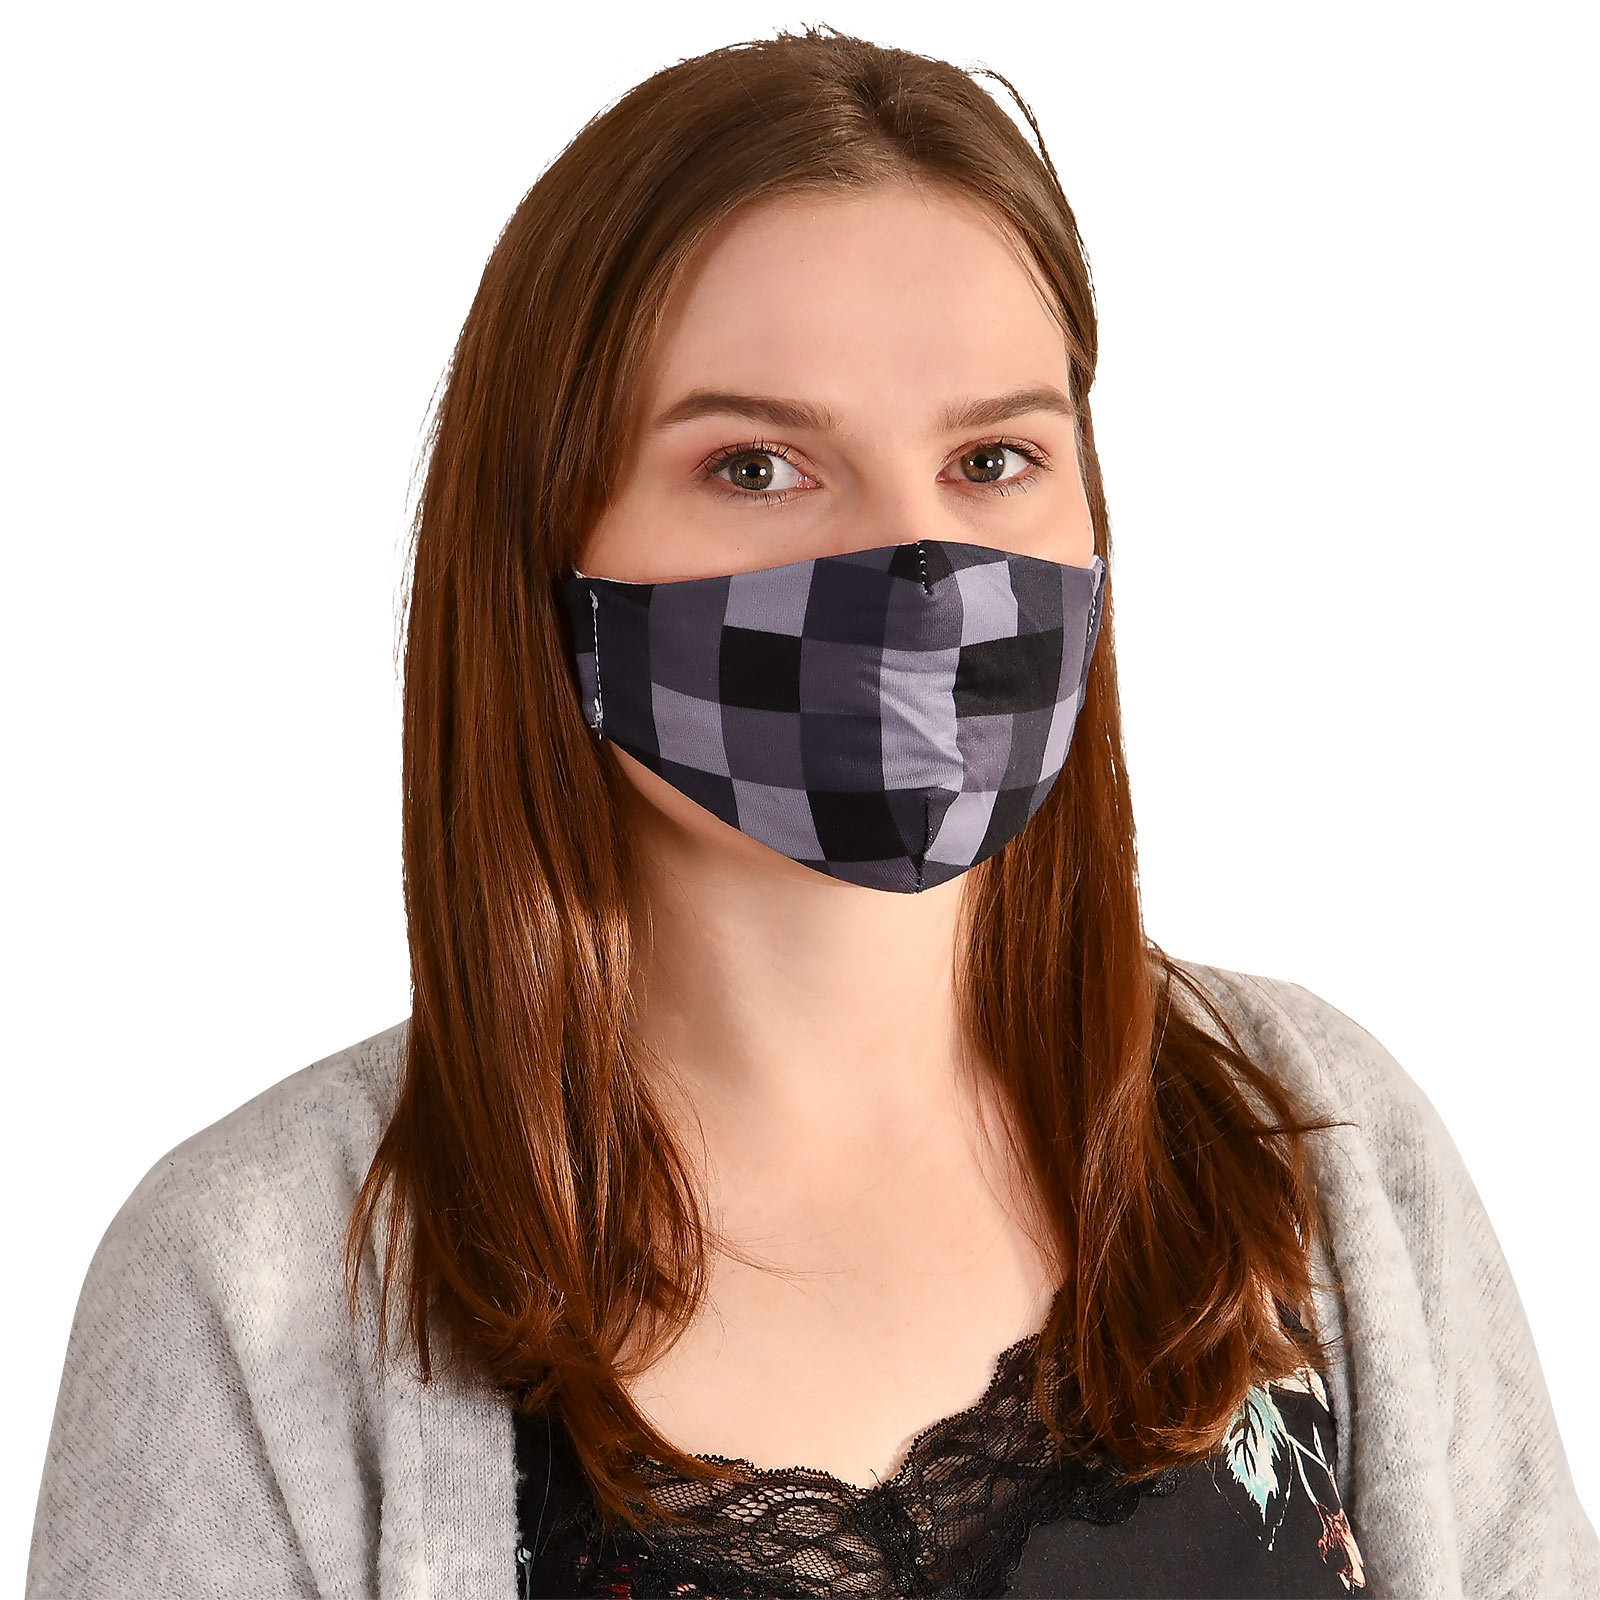 Pixel Gesichtsmaske für Minecraft Fans grau